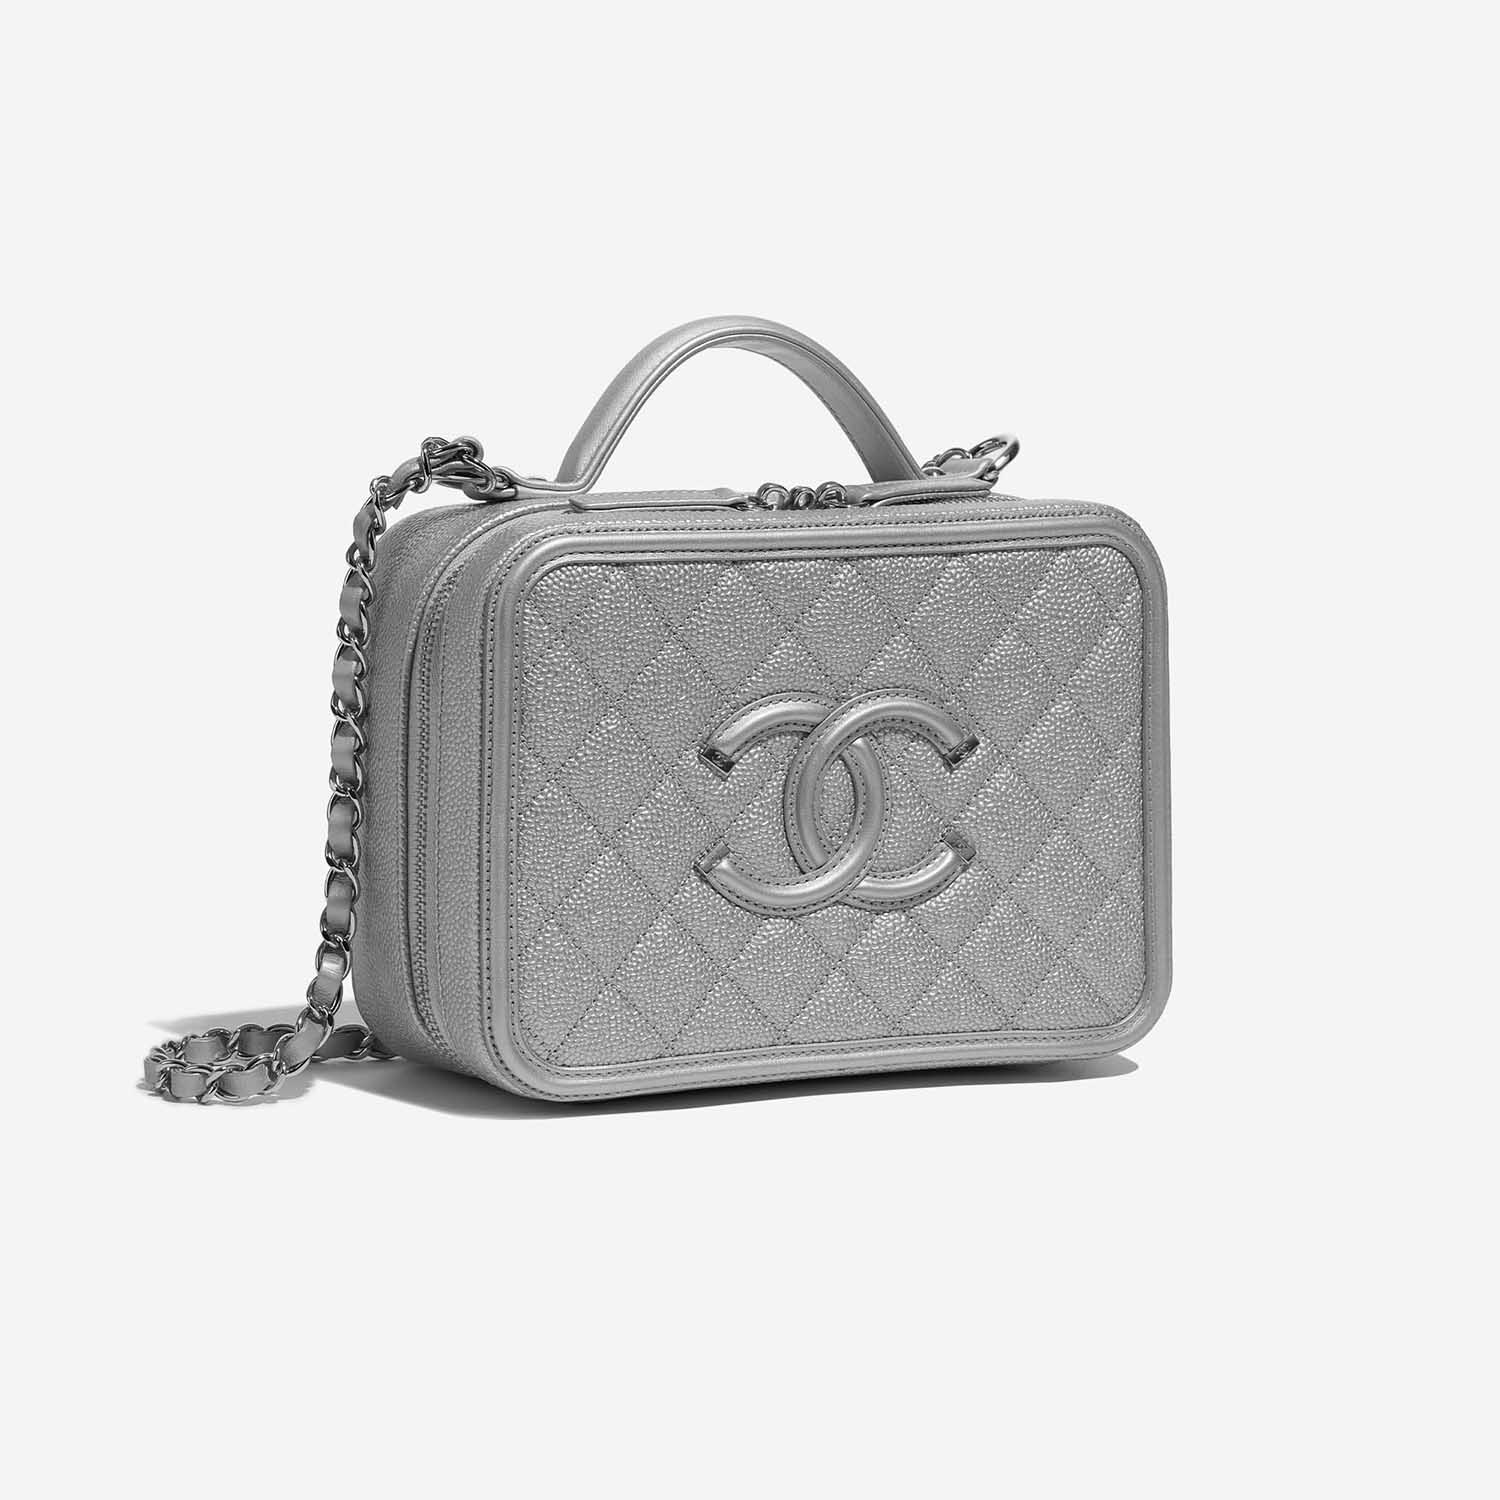 Sac Chanel d'occasion Vanity Case Medium Caviar Silver Silver Side Front | Vendez votre sac de créateur sur Saclab.com